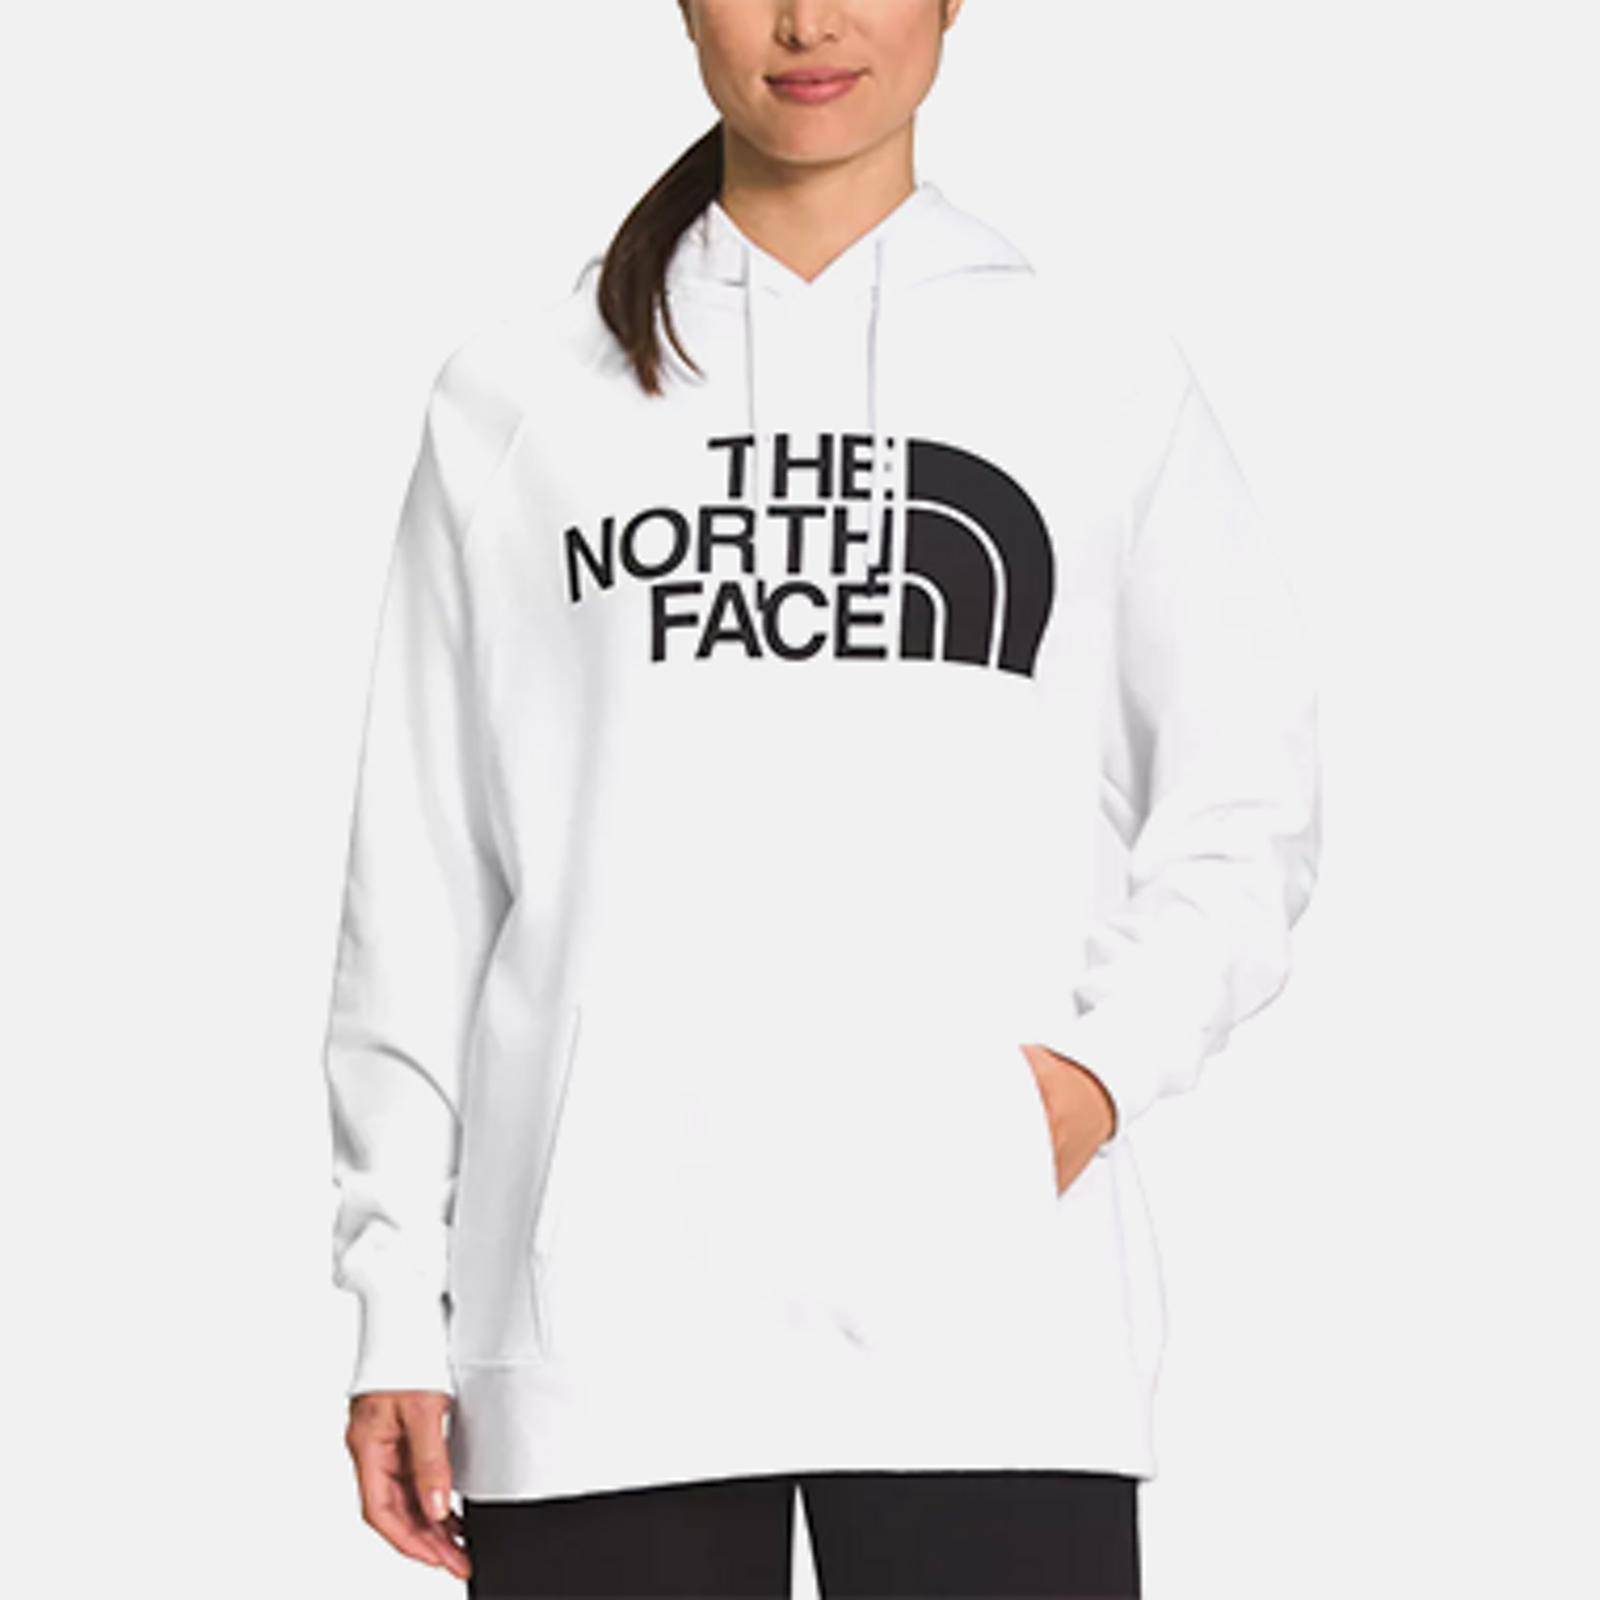 Women's Hoodies & Sweatshirts - Macy's